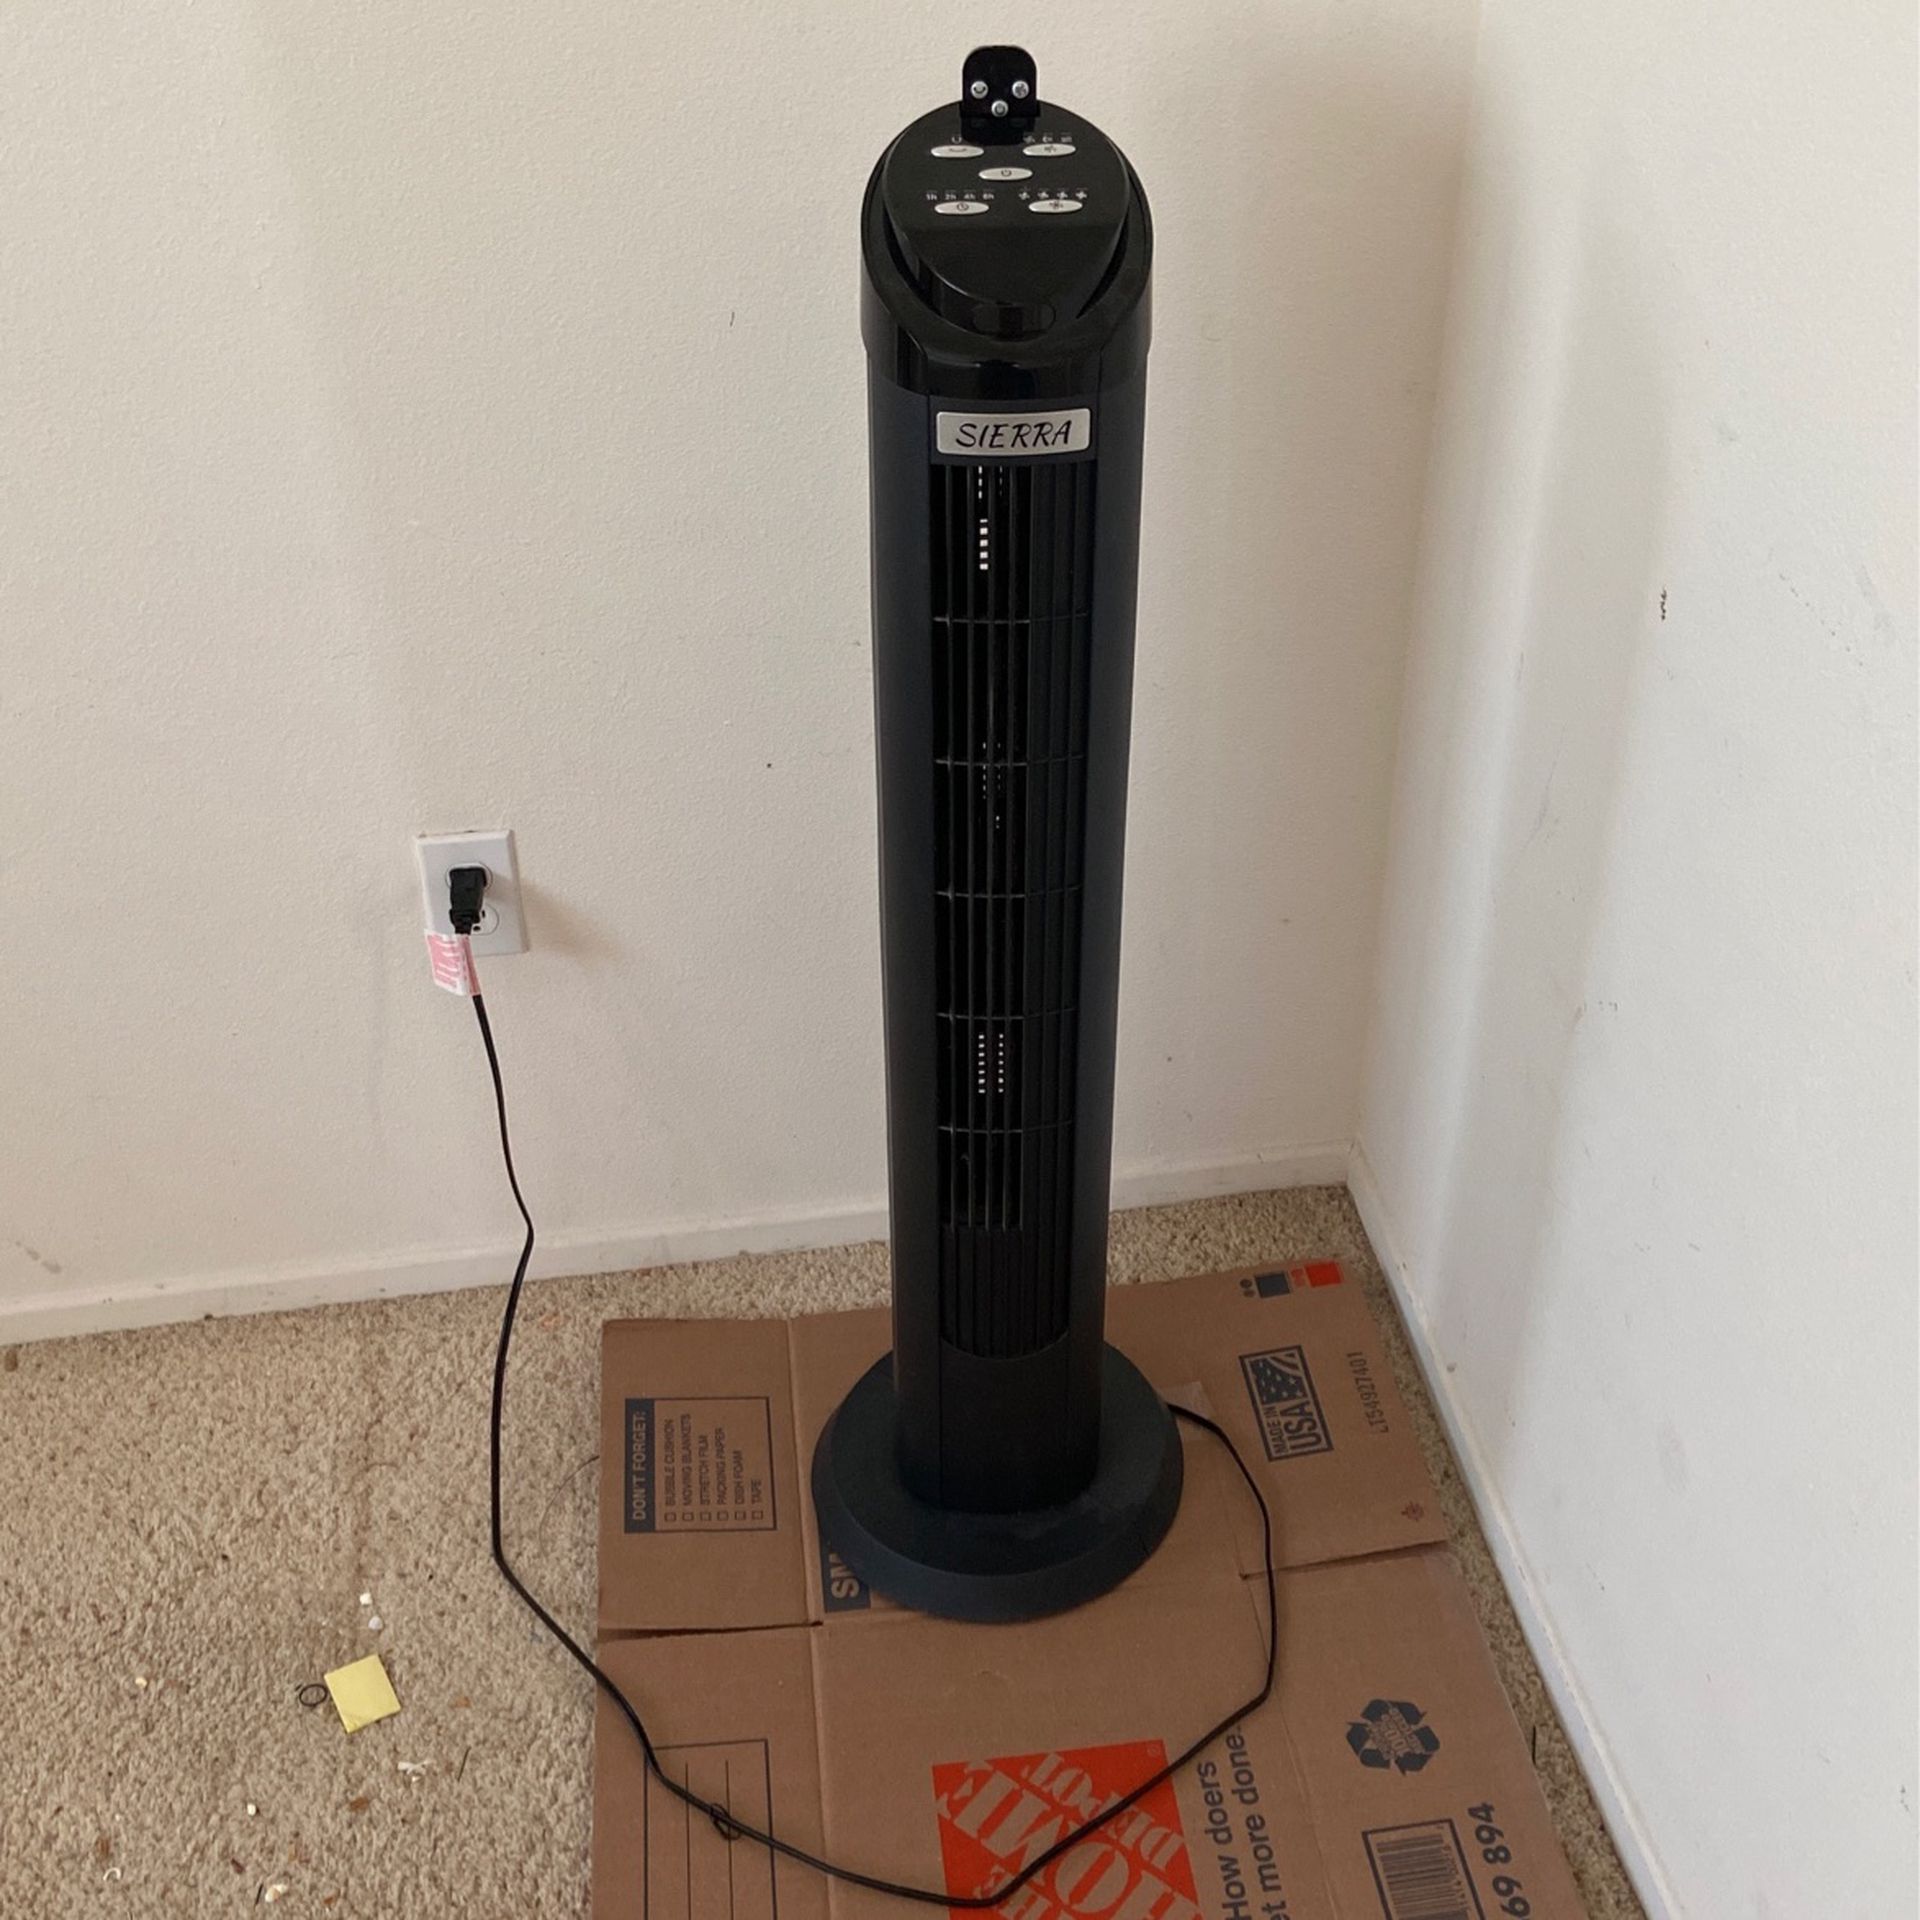 Sierra Tower Fan With Remote